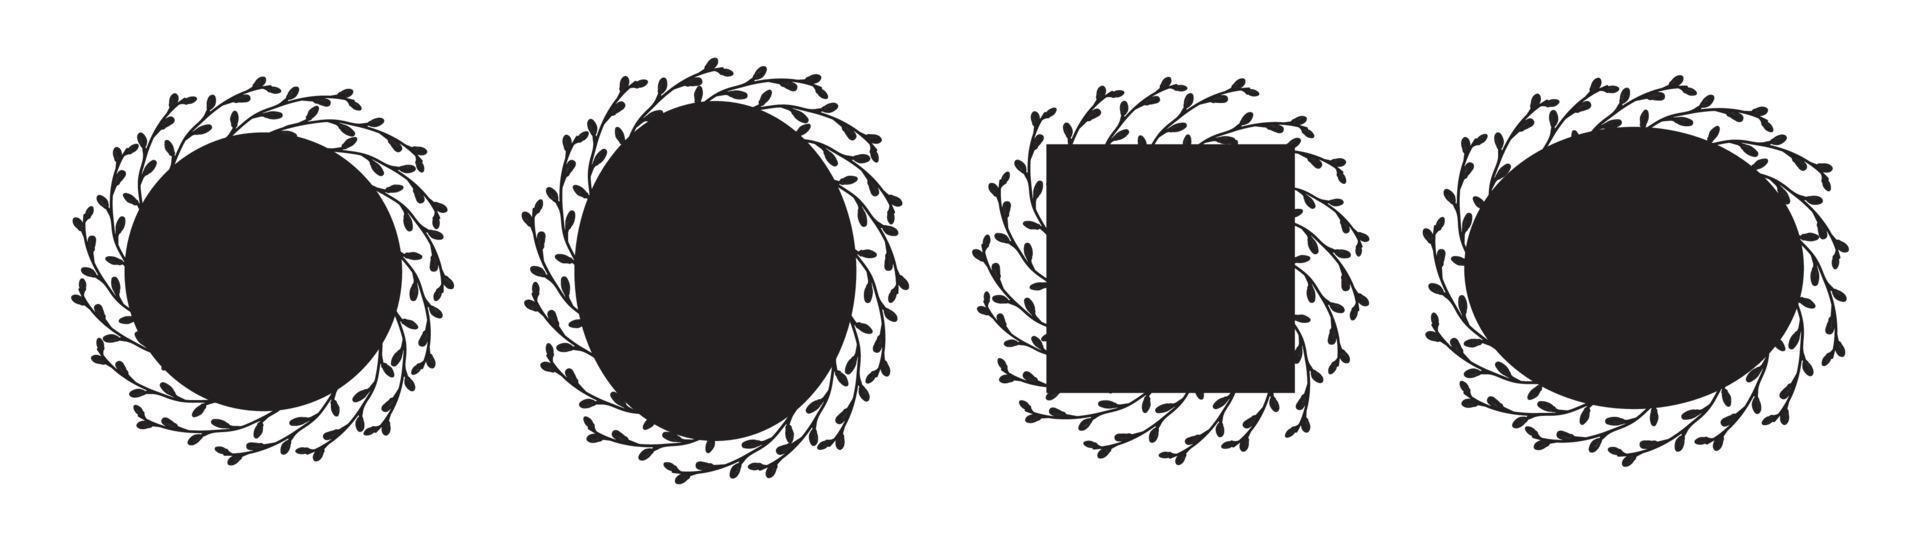 Satz schöne Weidenrahmen. quadratische, ovale, runde Rahmen mit Exemplar. Rahmen schwarze Silhouette isoliert. vektor